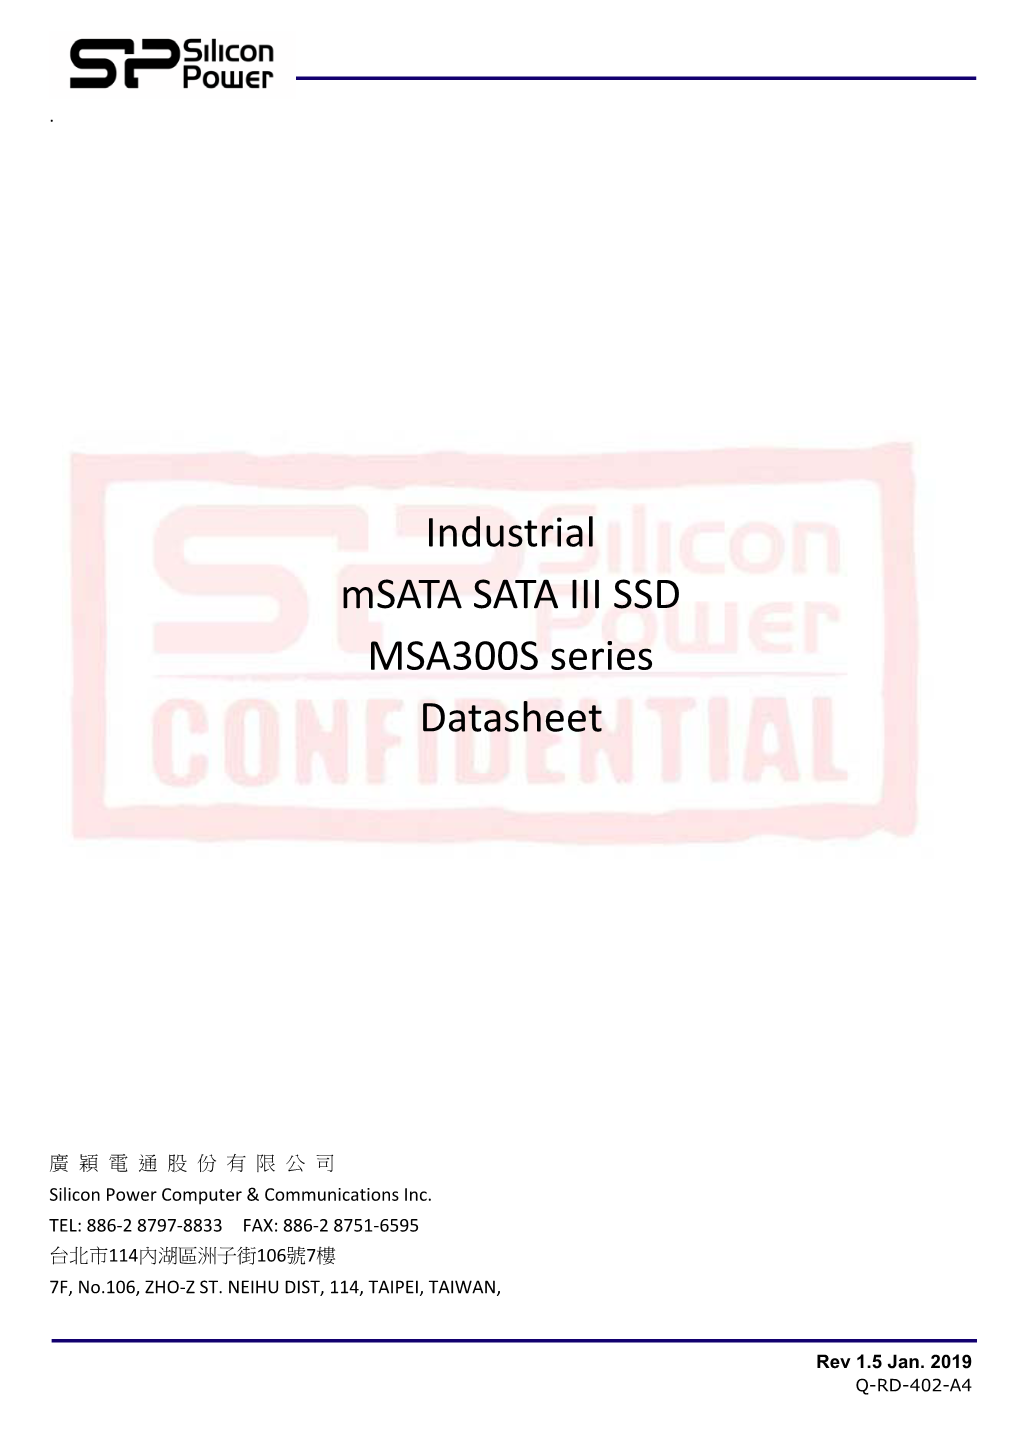 Industrial Msata SATA III SSD MSA300S Series Datasheet